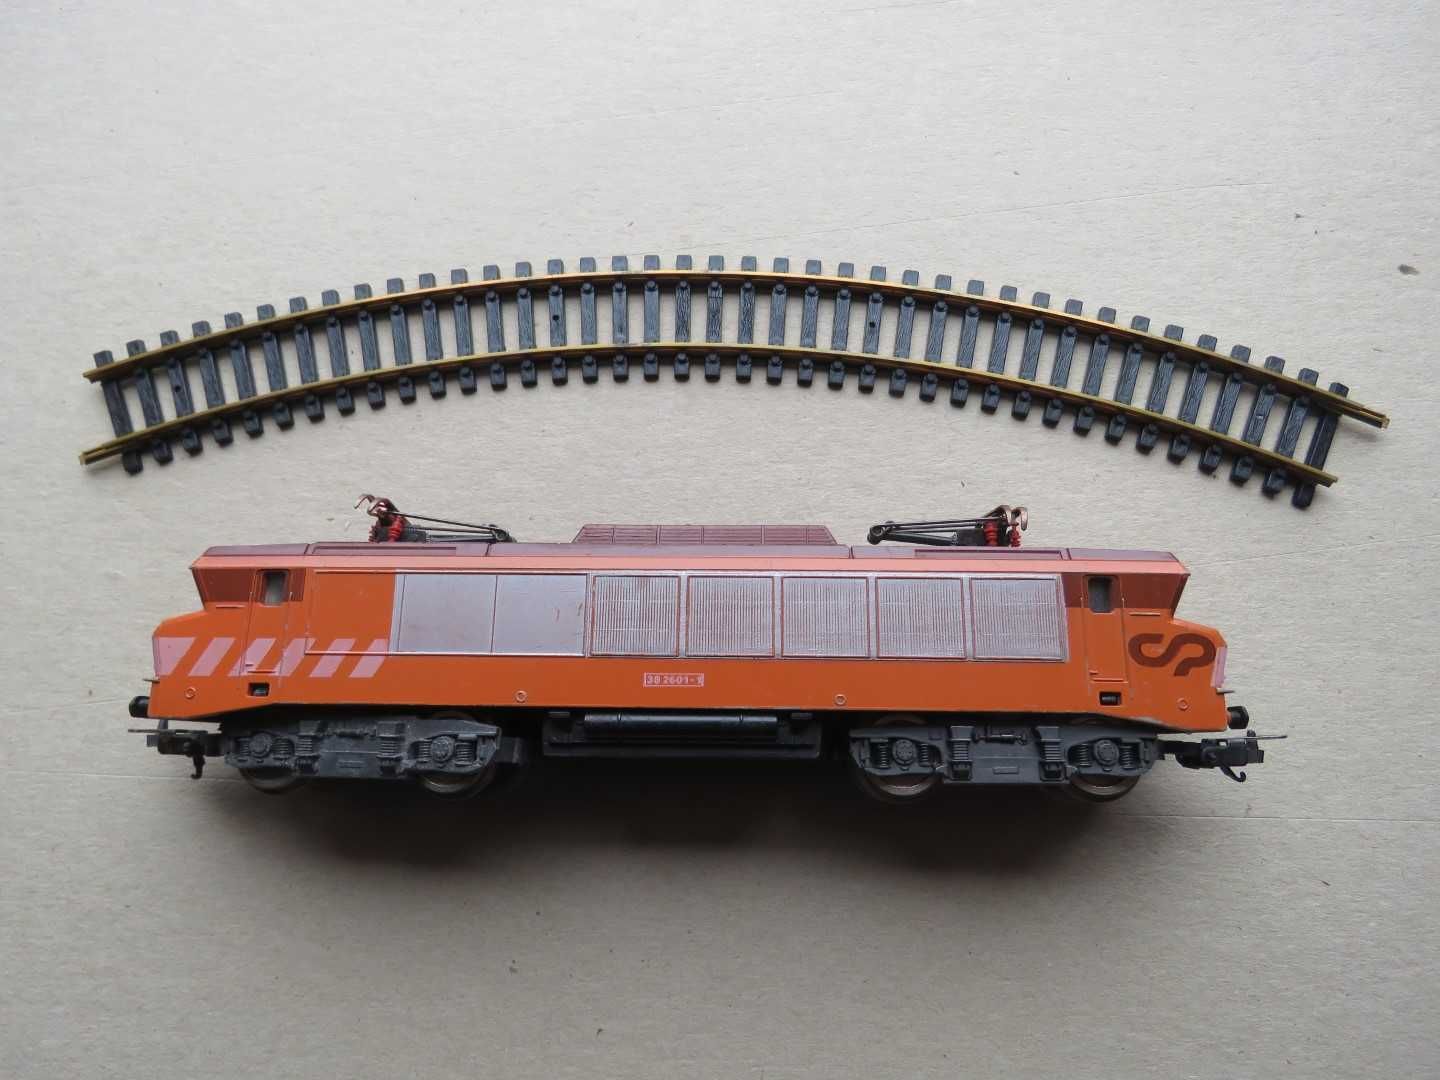 Locomotiva original Lima CP 2600, analógica 2 pantografos.